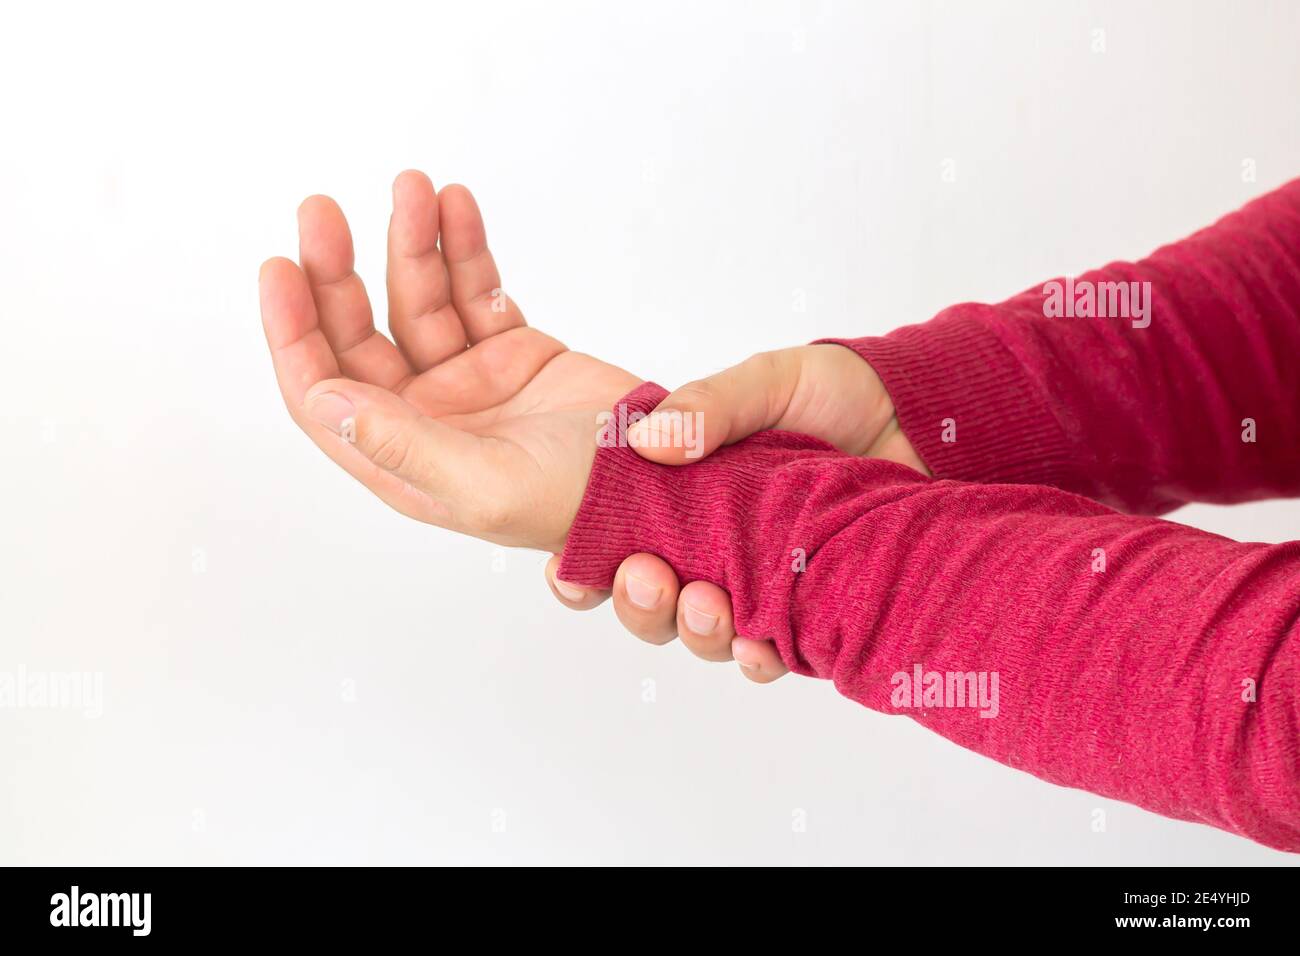 Homme souffrant de douleurs au poignet à cause de l'arthrite, du rhumatisme ou de la crache. Concept de soins de santé Banque D'Images